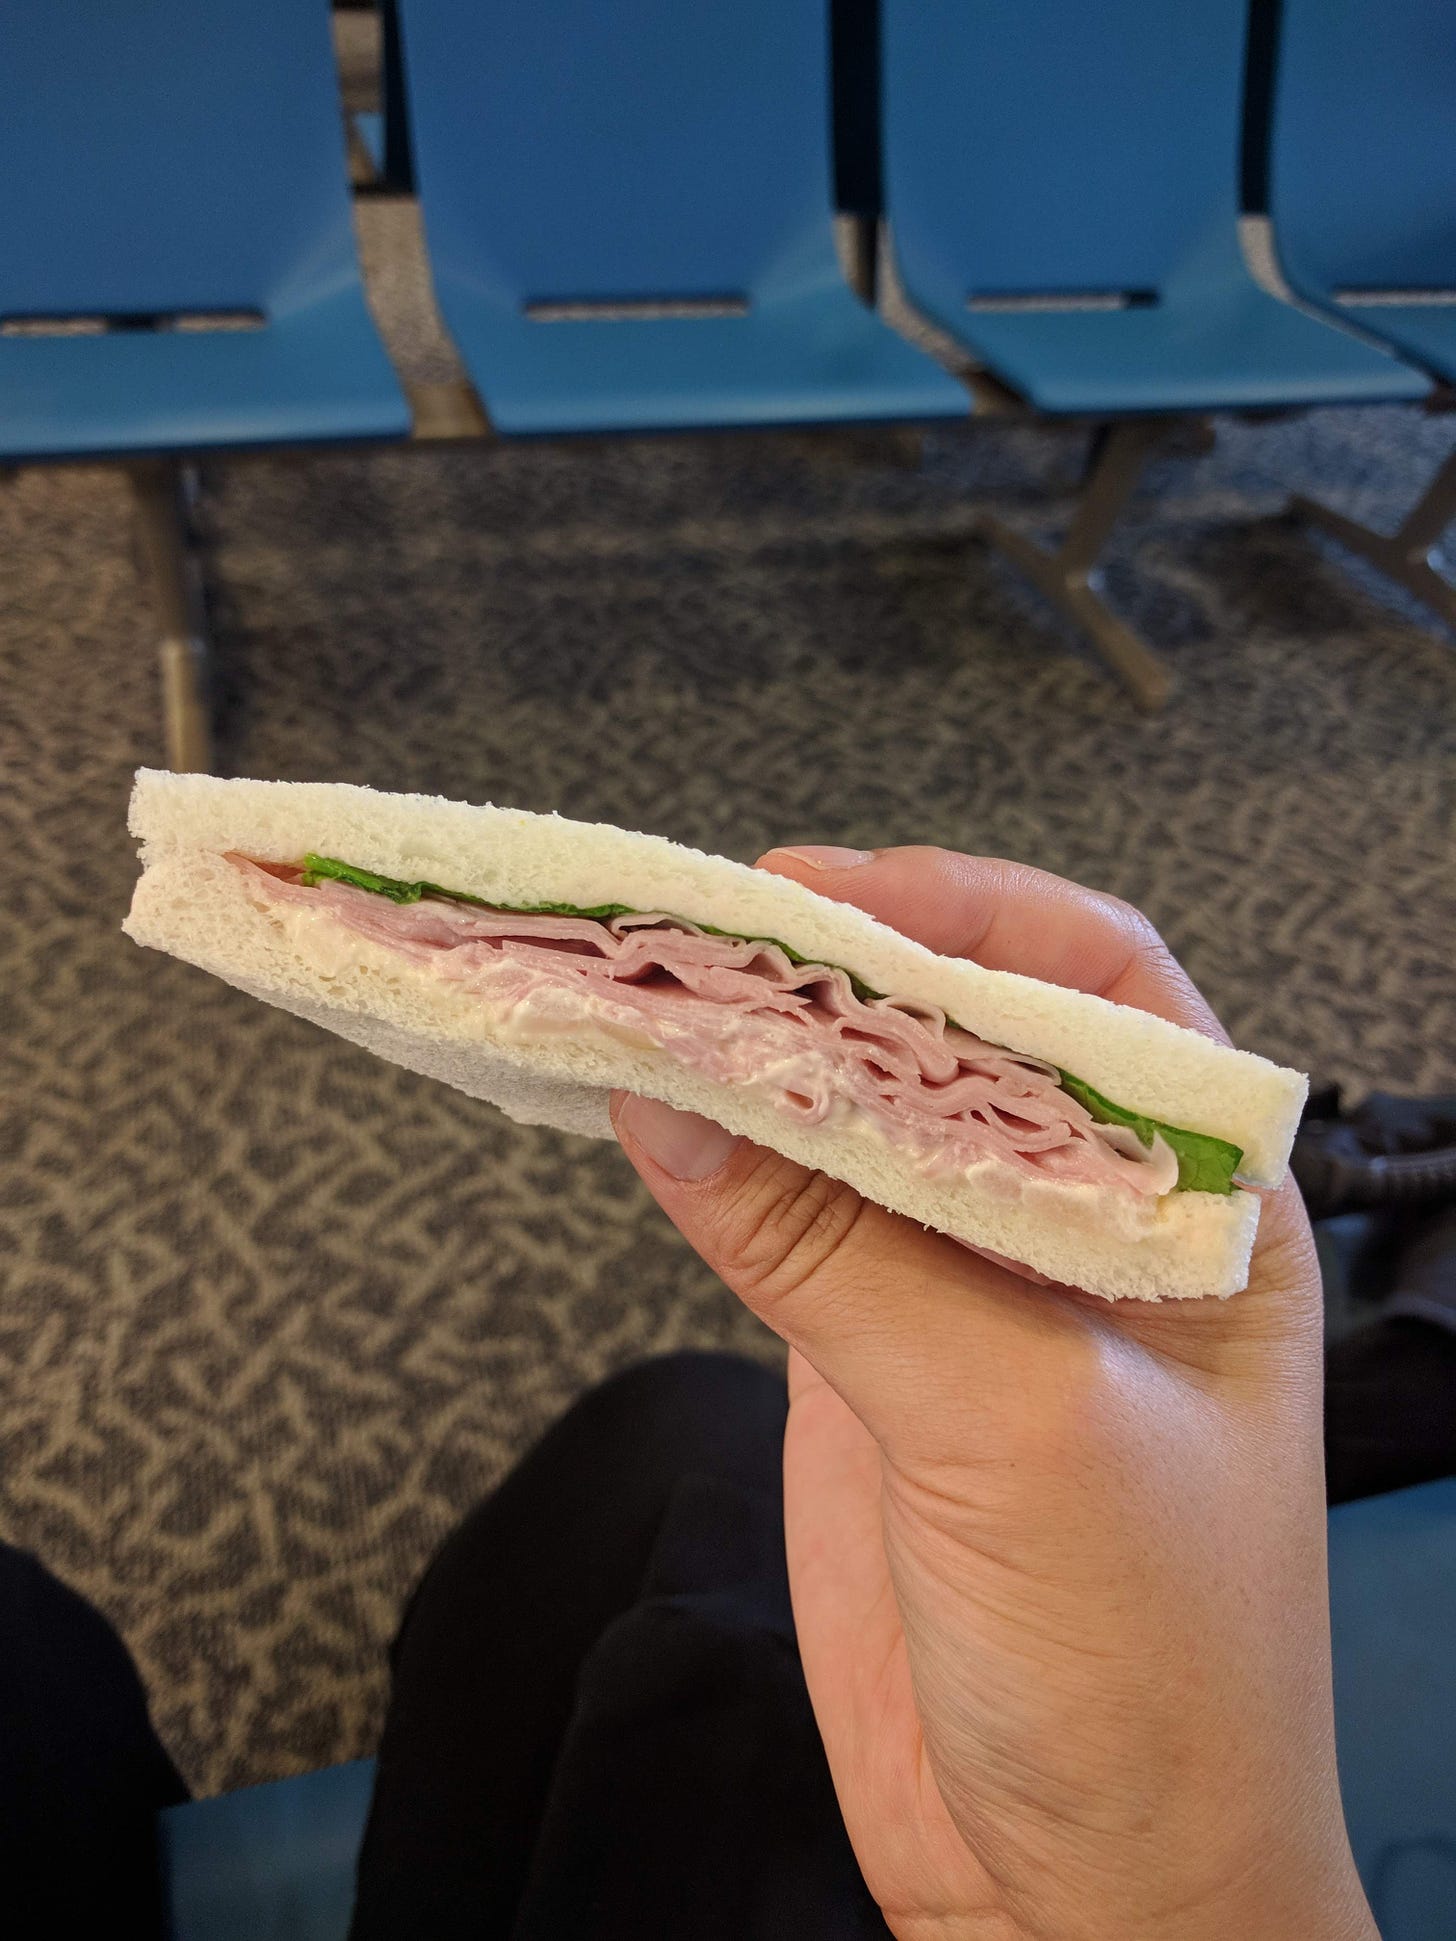 My last sandwich in Japan